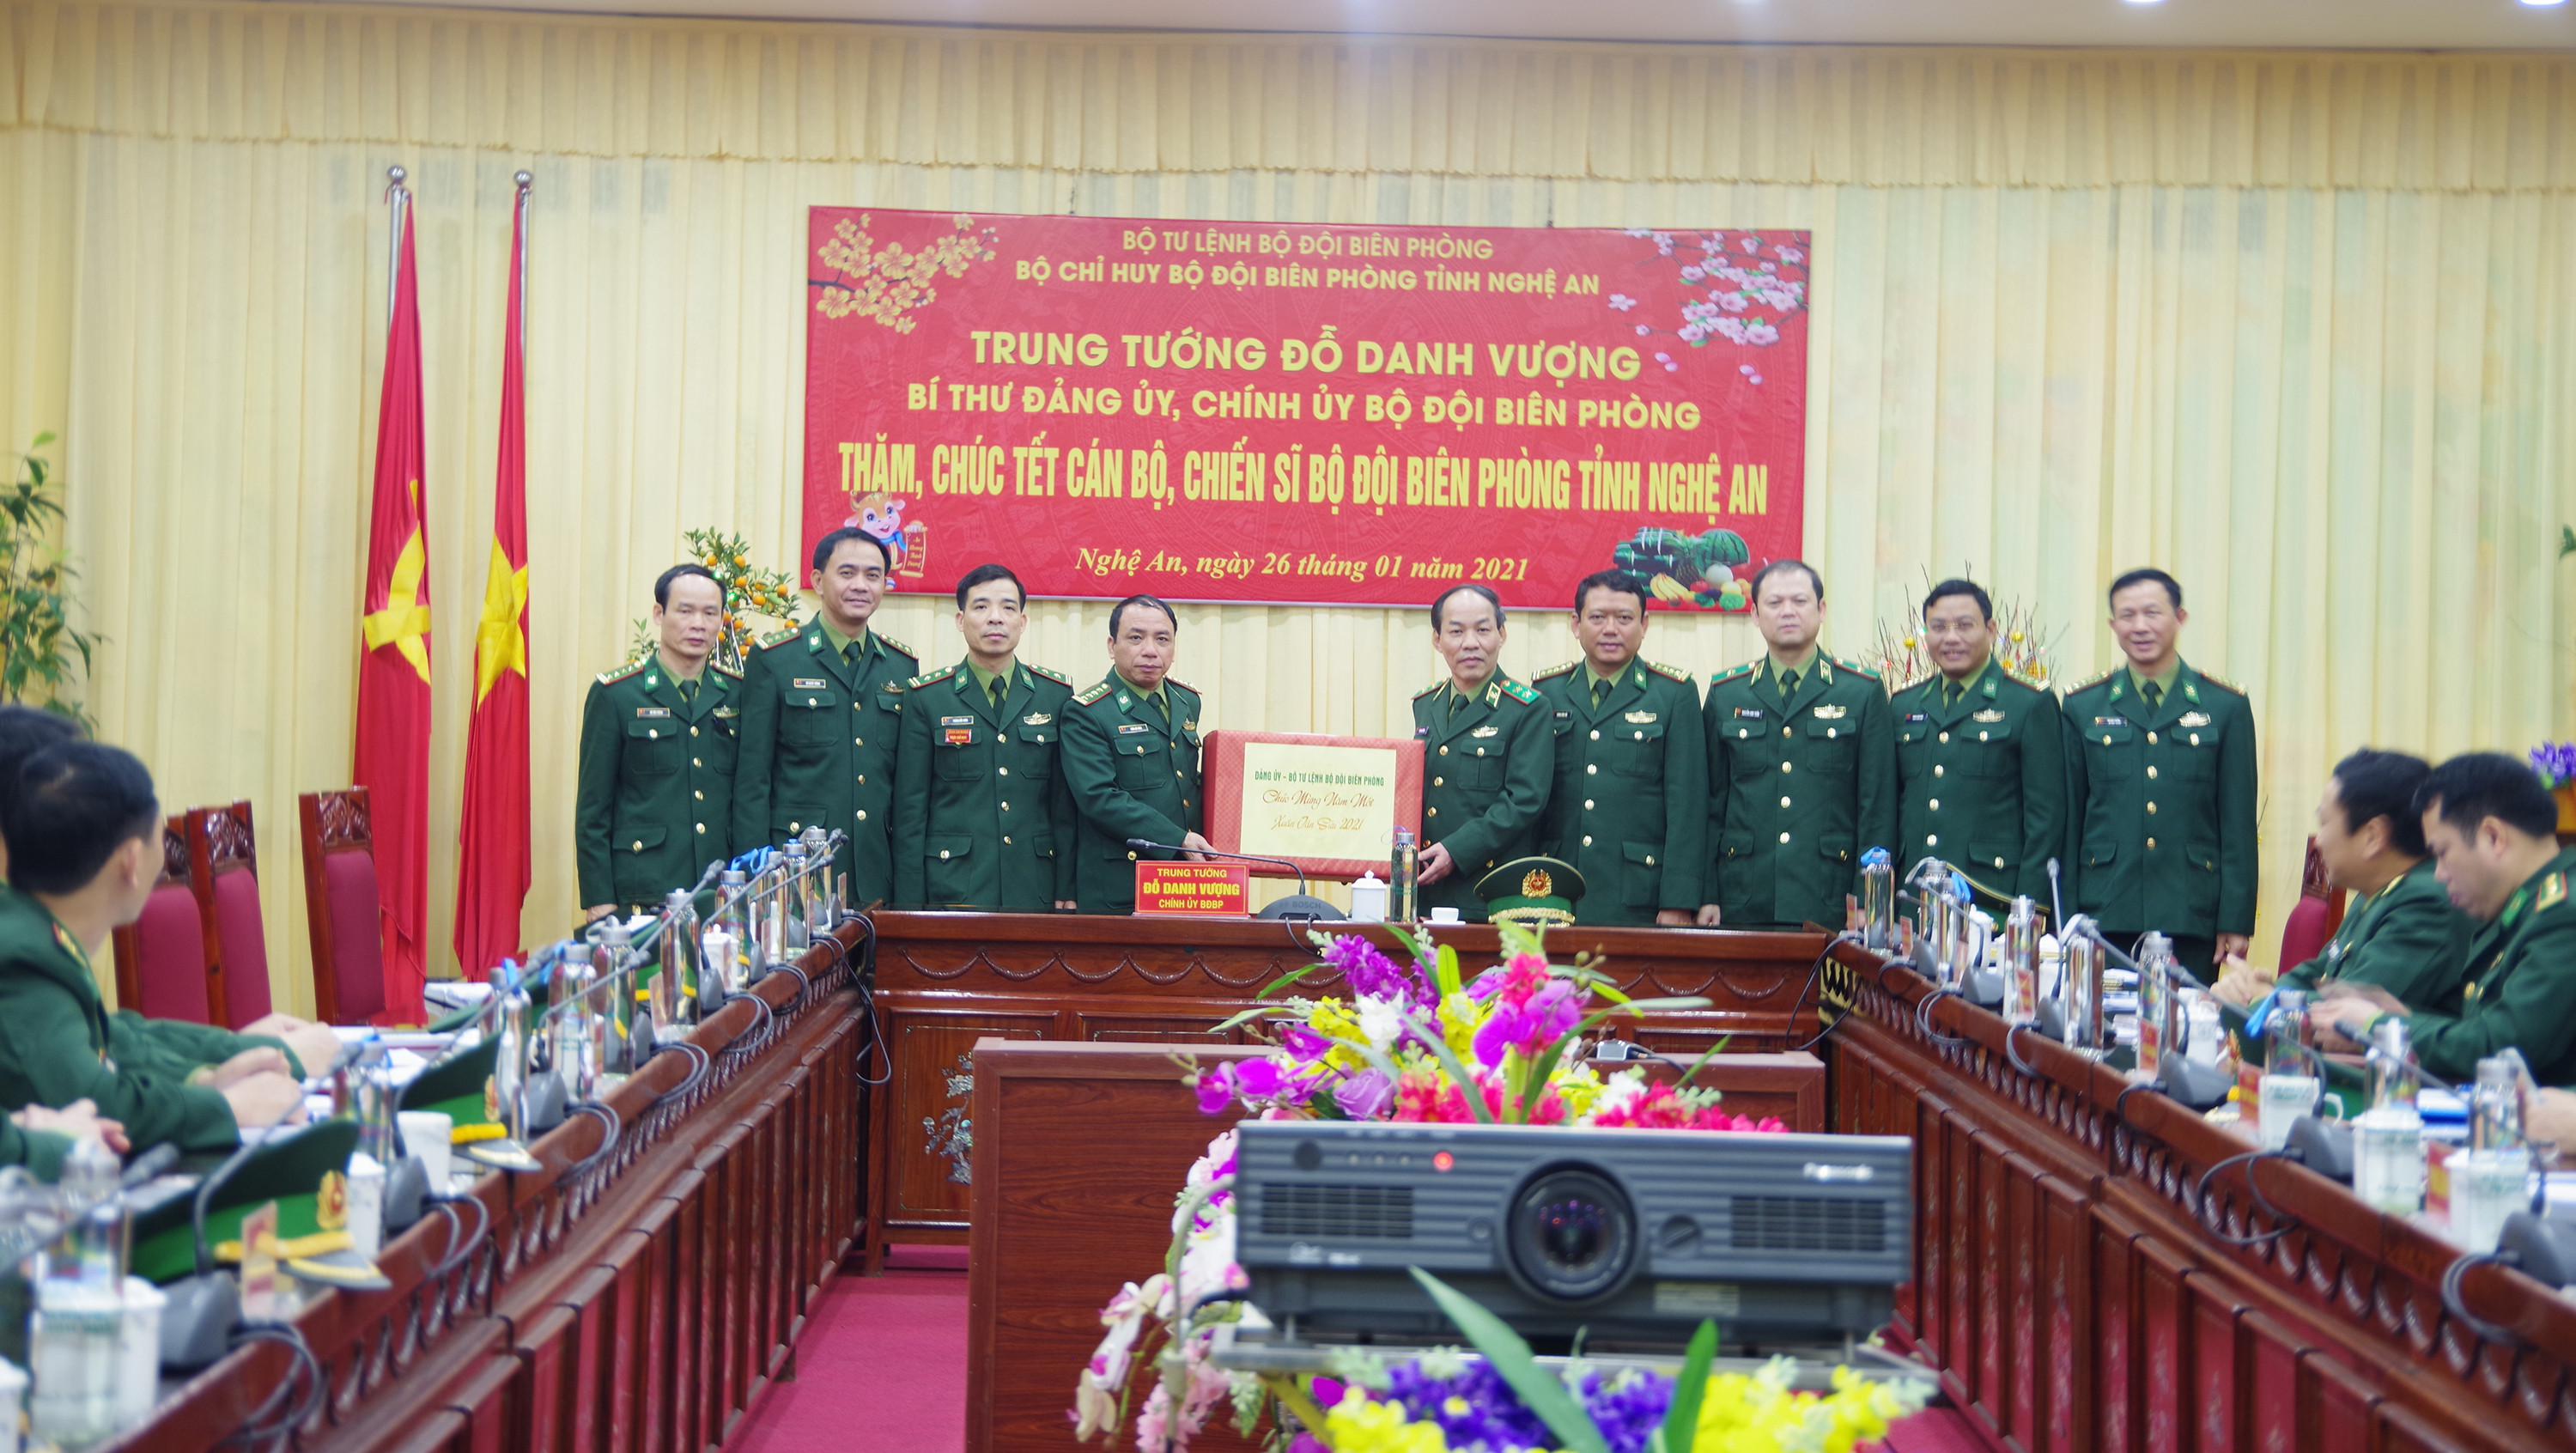 Trung tướng Đỗ Danh Vượng, Chính ủy BĐBP tặng quà cán bộ, chiến sĩ BĐBP Nghệ An